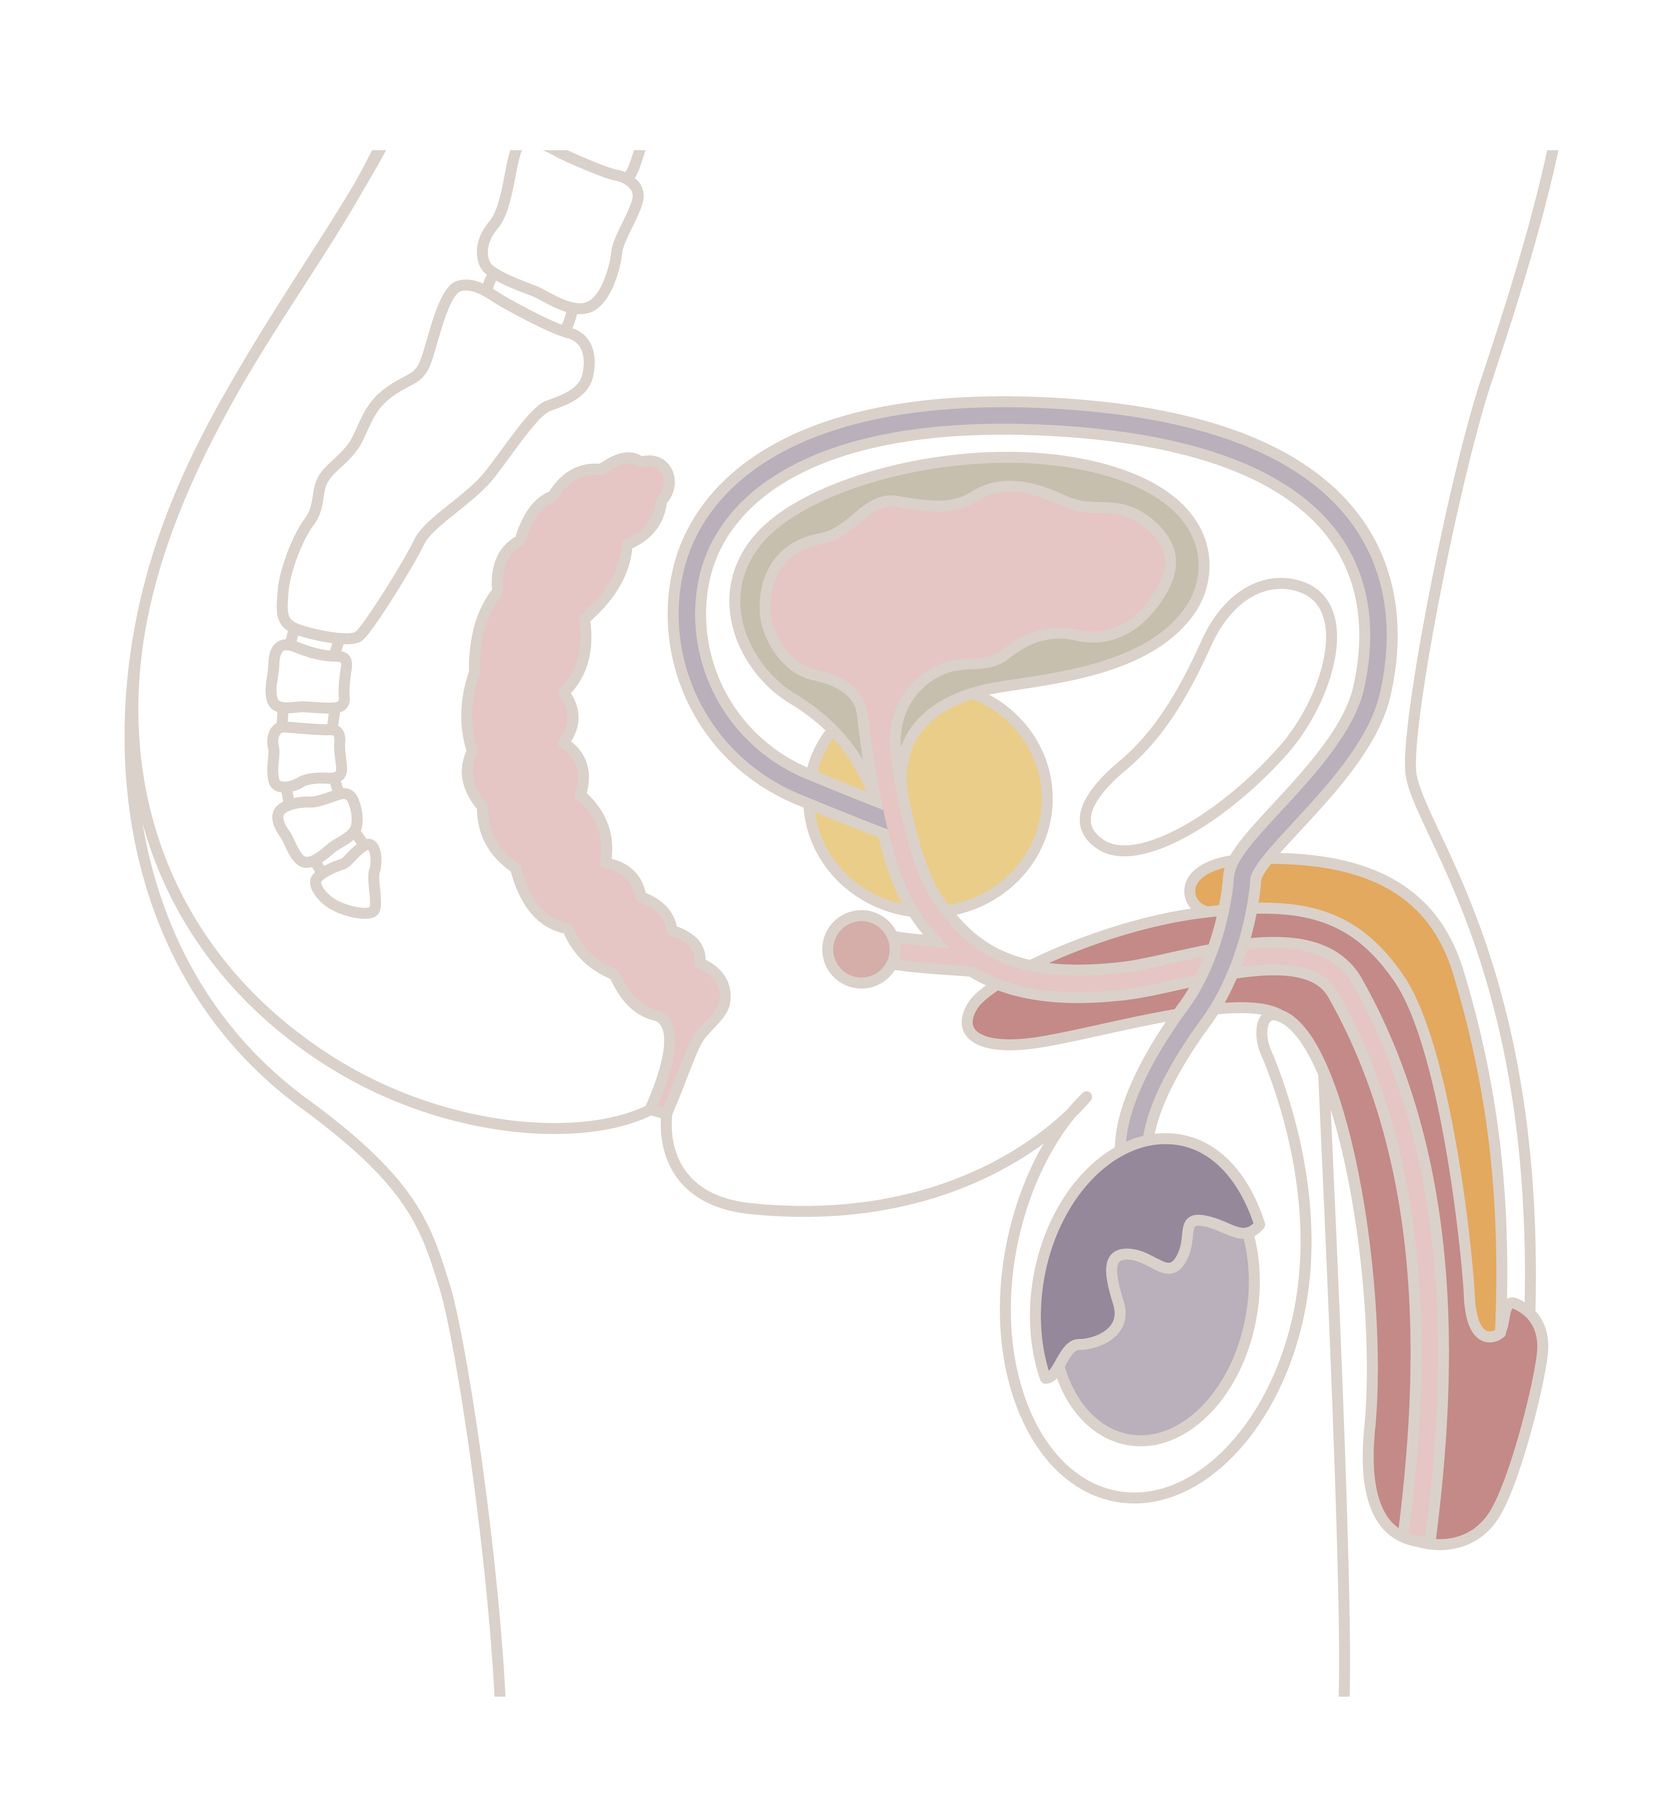 Die Prostata liegt unterhalb der Harnblase bzw. umschließt die Harnröhre.